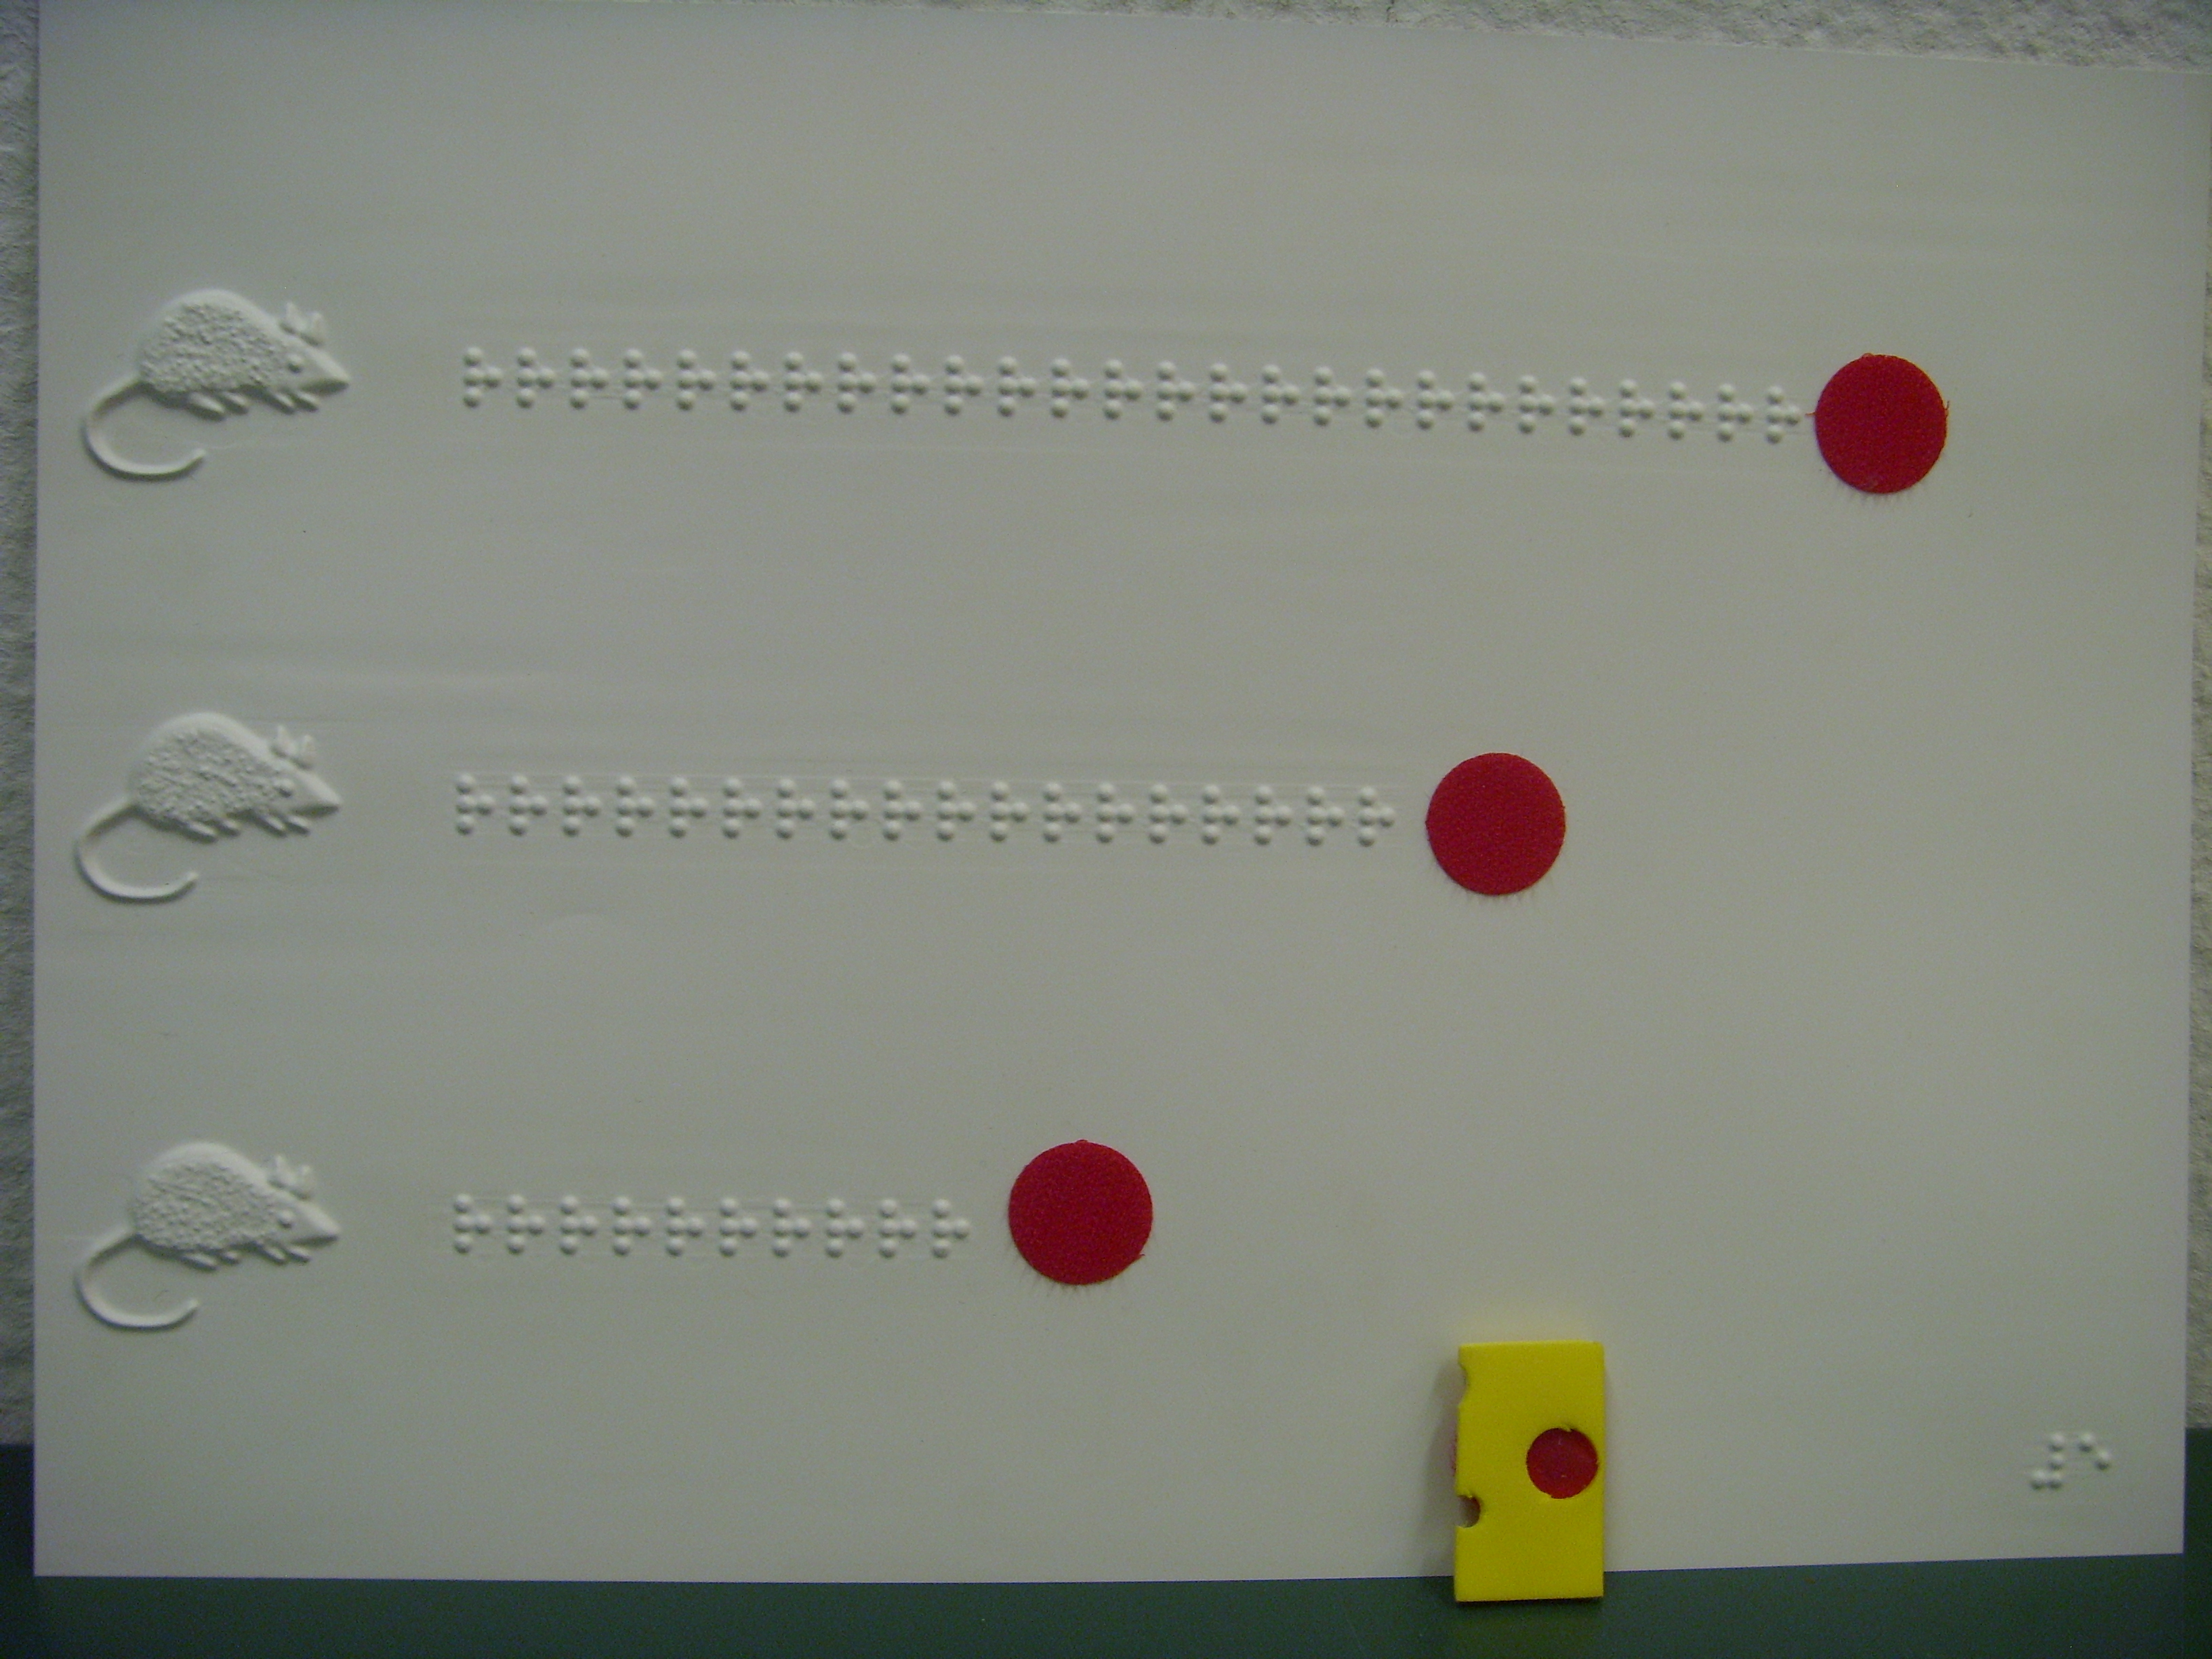 Blatt mit drei Wegen aus Braillezeichen und einem Käsestück. Die Startpunkte sind Mäuse.